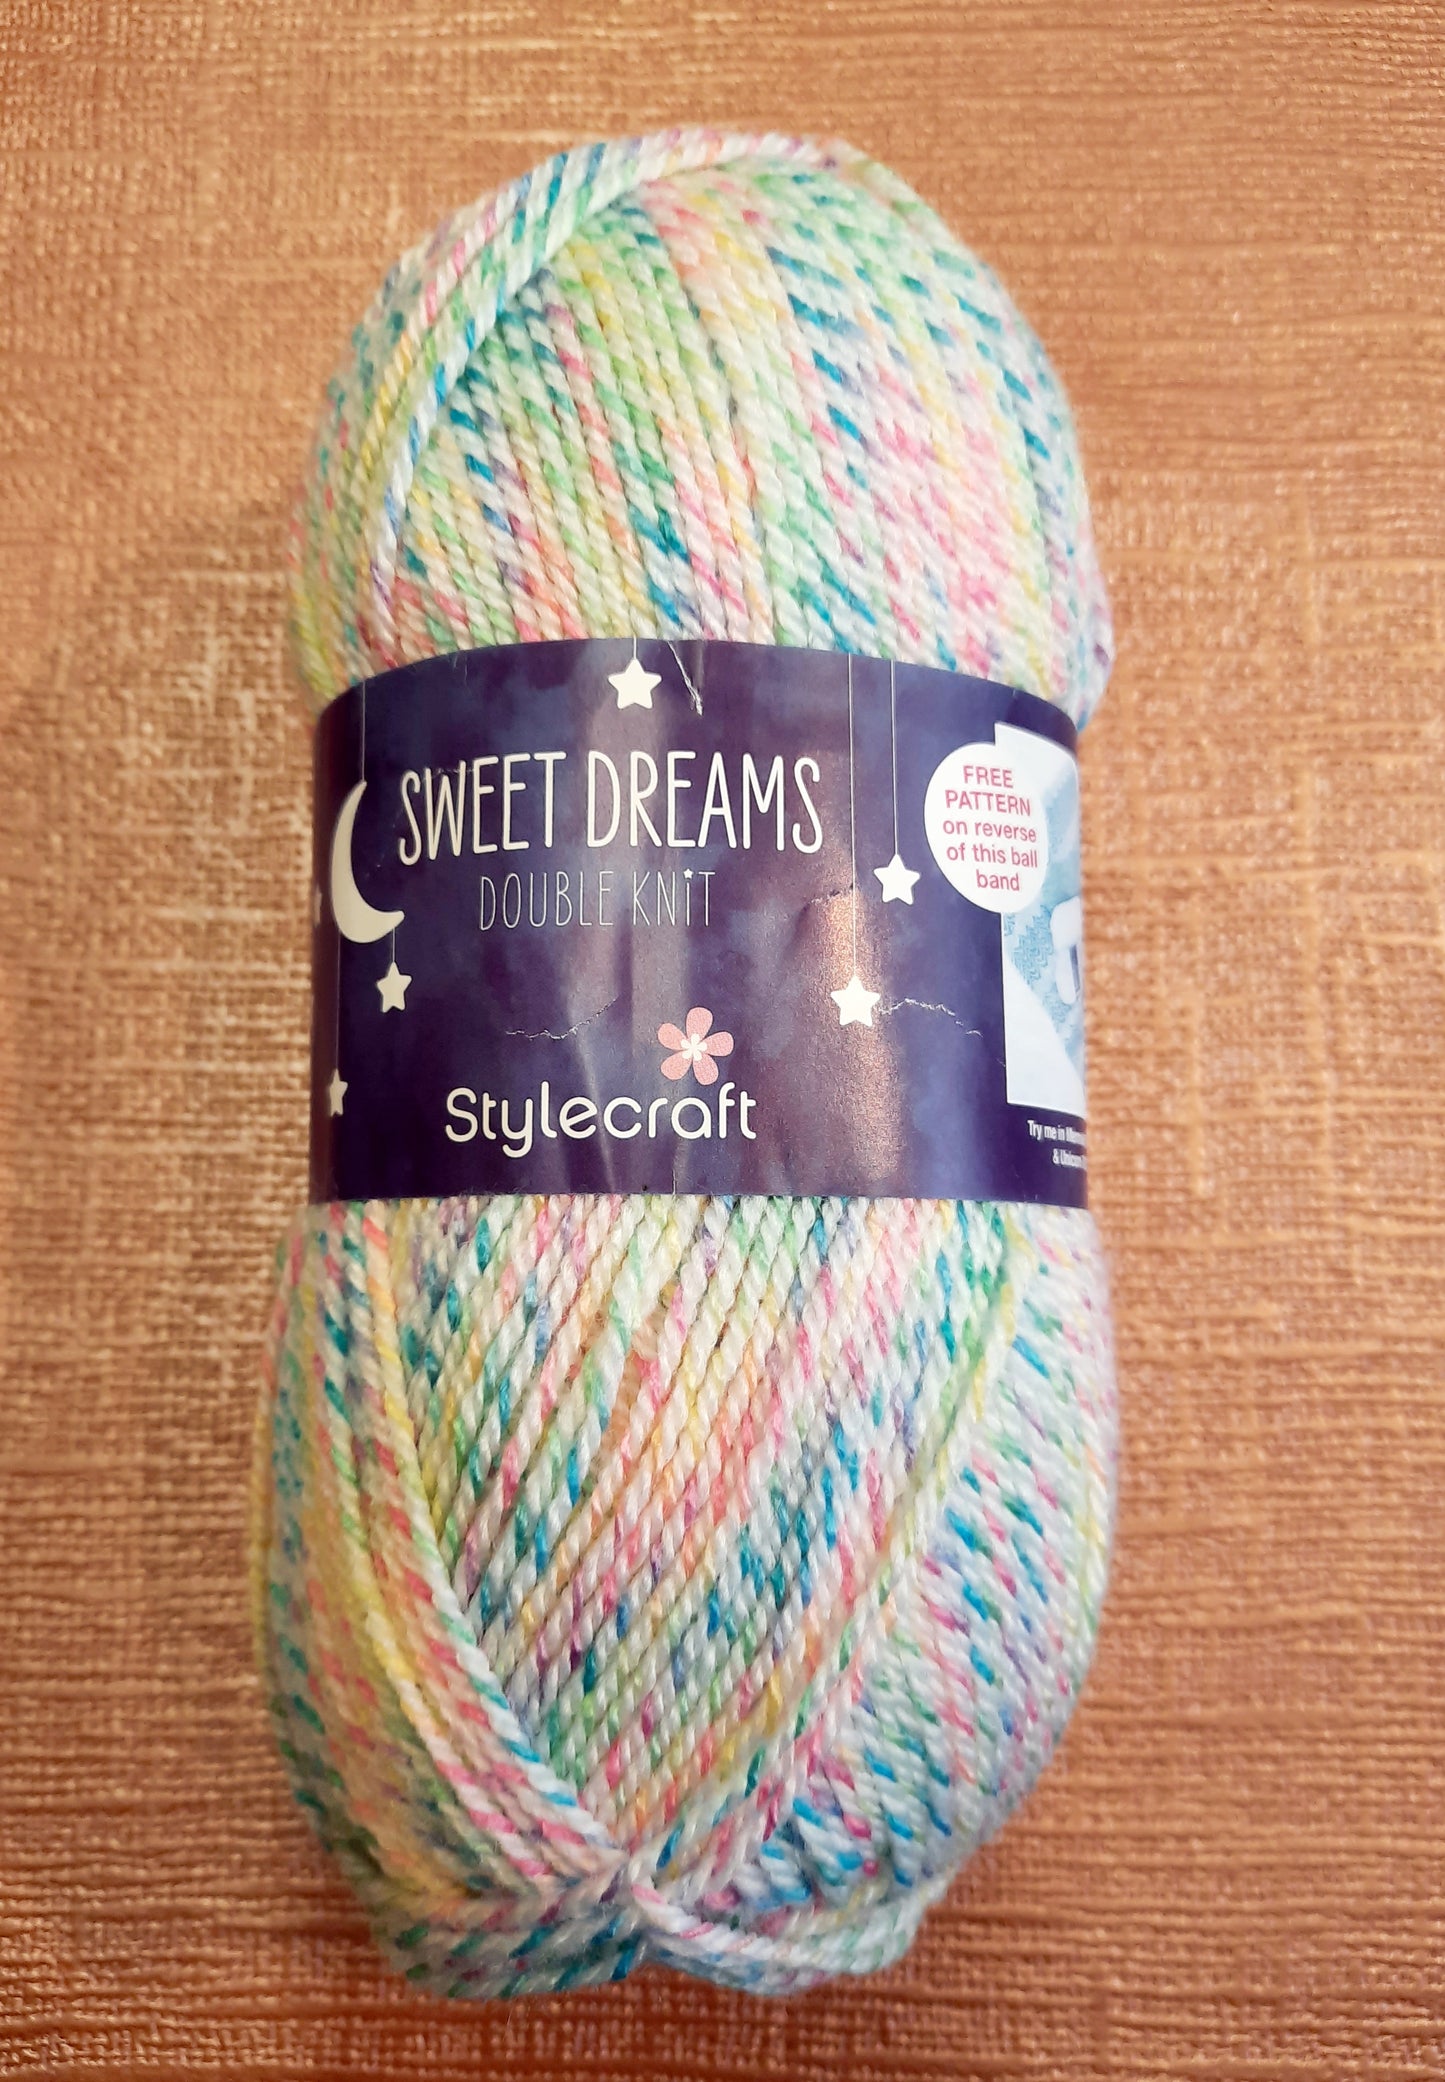 Stylecraft Sweet Dreams Dk 7029 Mermaid *NEW*